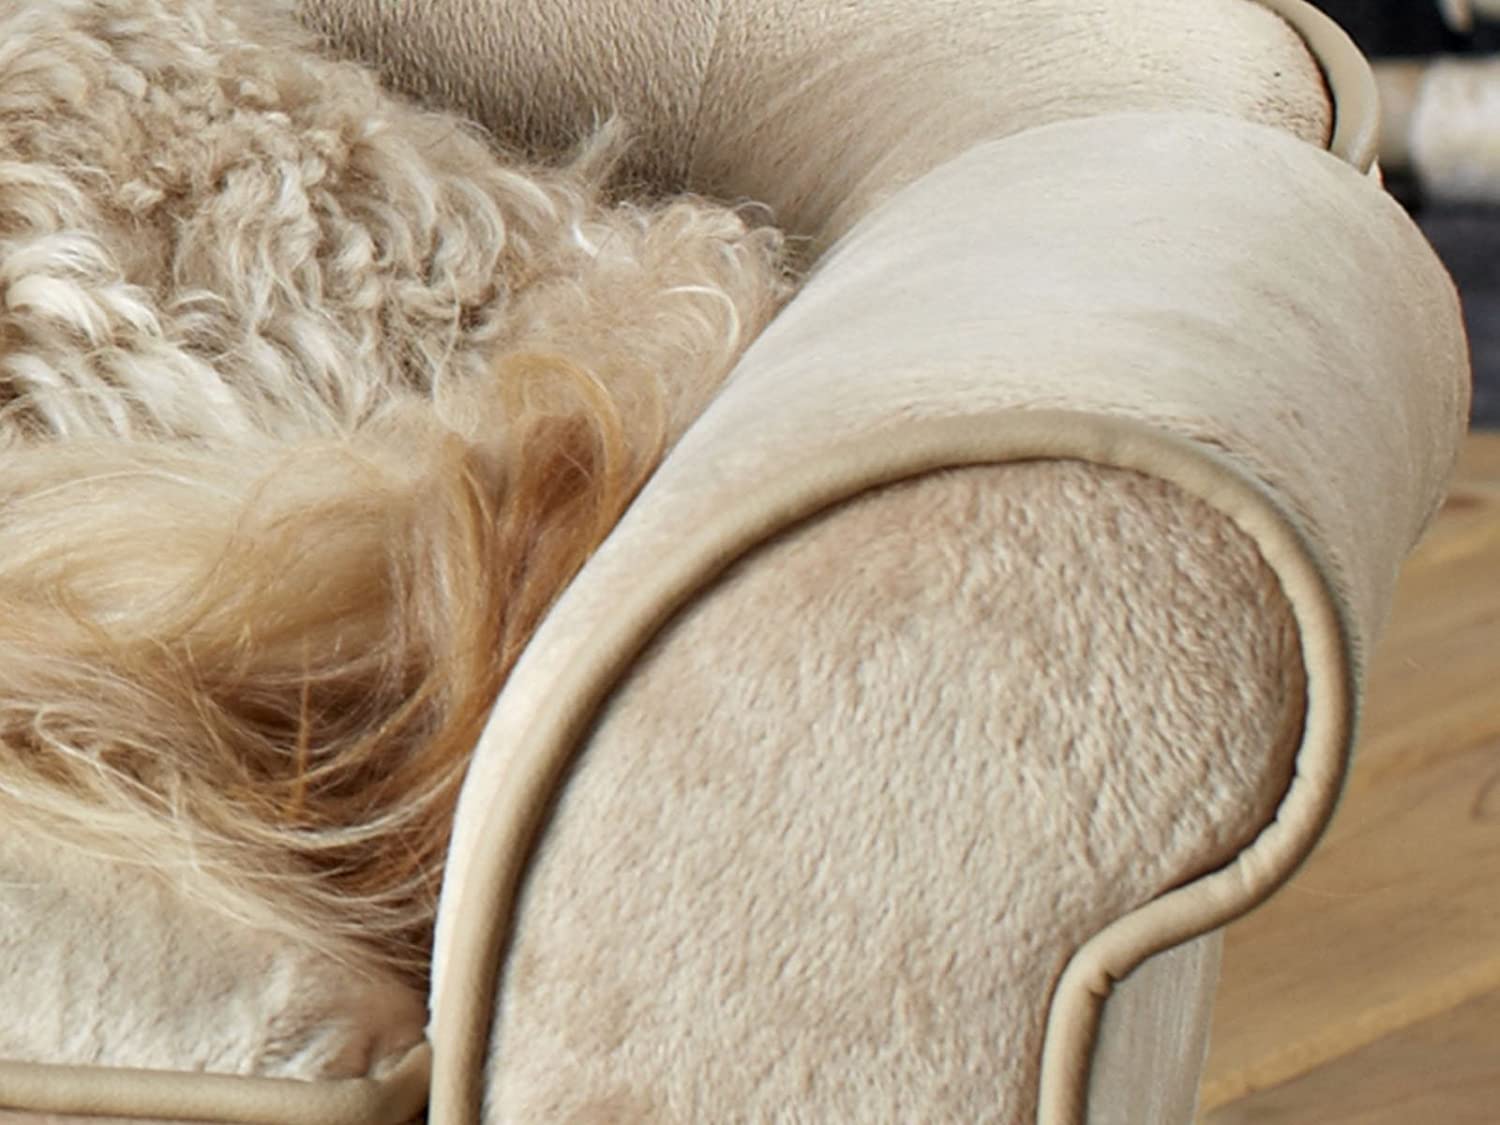  Perro sofá Cama para Perros Perro Longue Espacio Perros Cesta Cojín Dream Catcher I 74 x 42 x 28 cm. asiento: 48 x 28 x 8 cm. cojin: 30 x 10 cm 